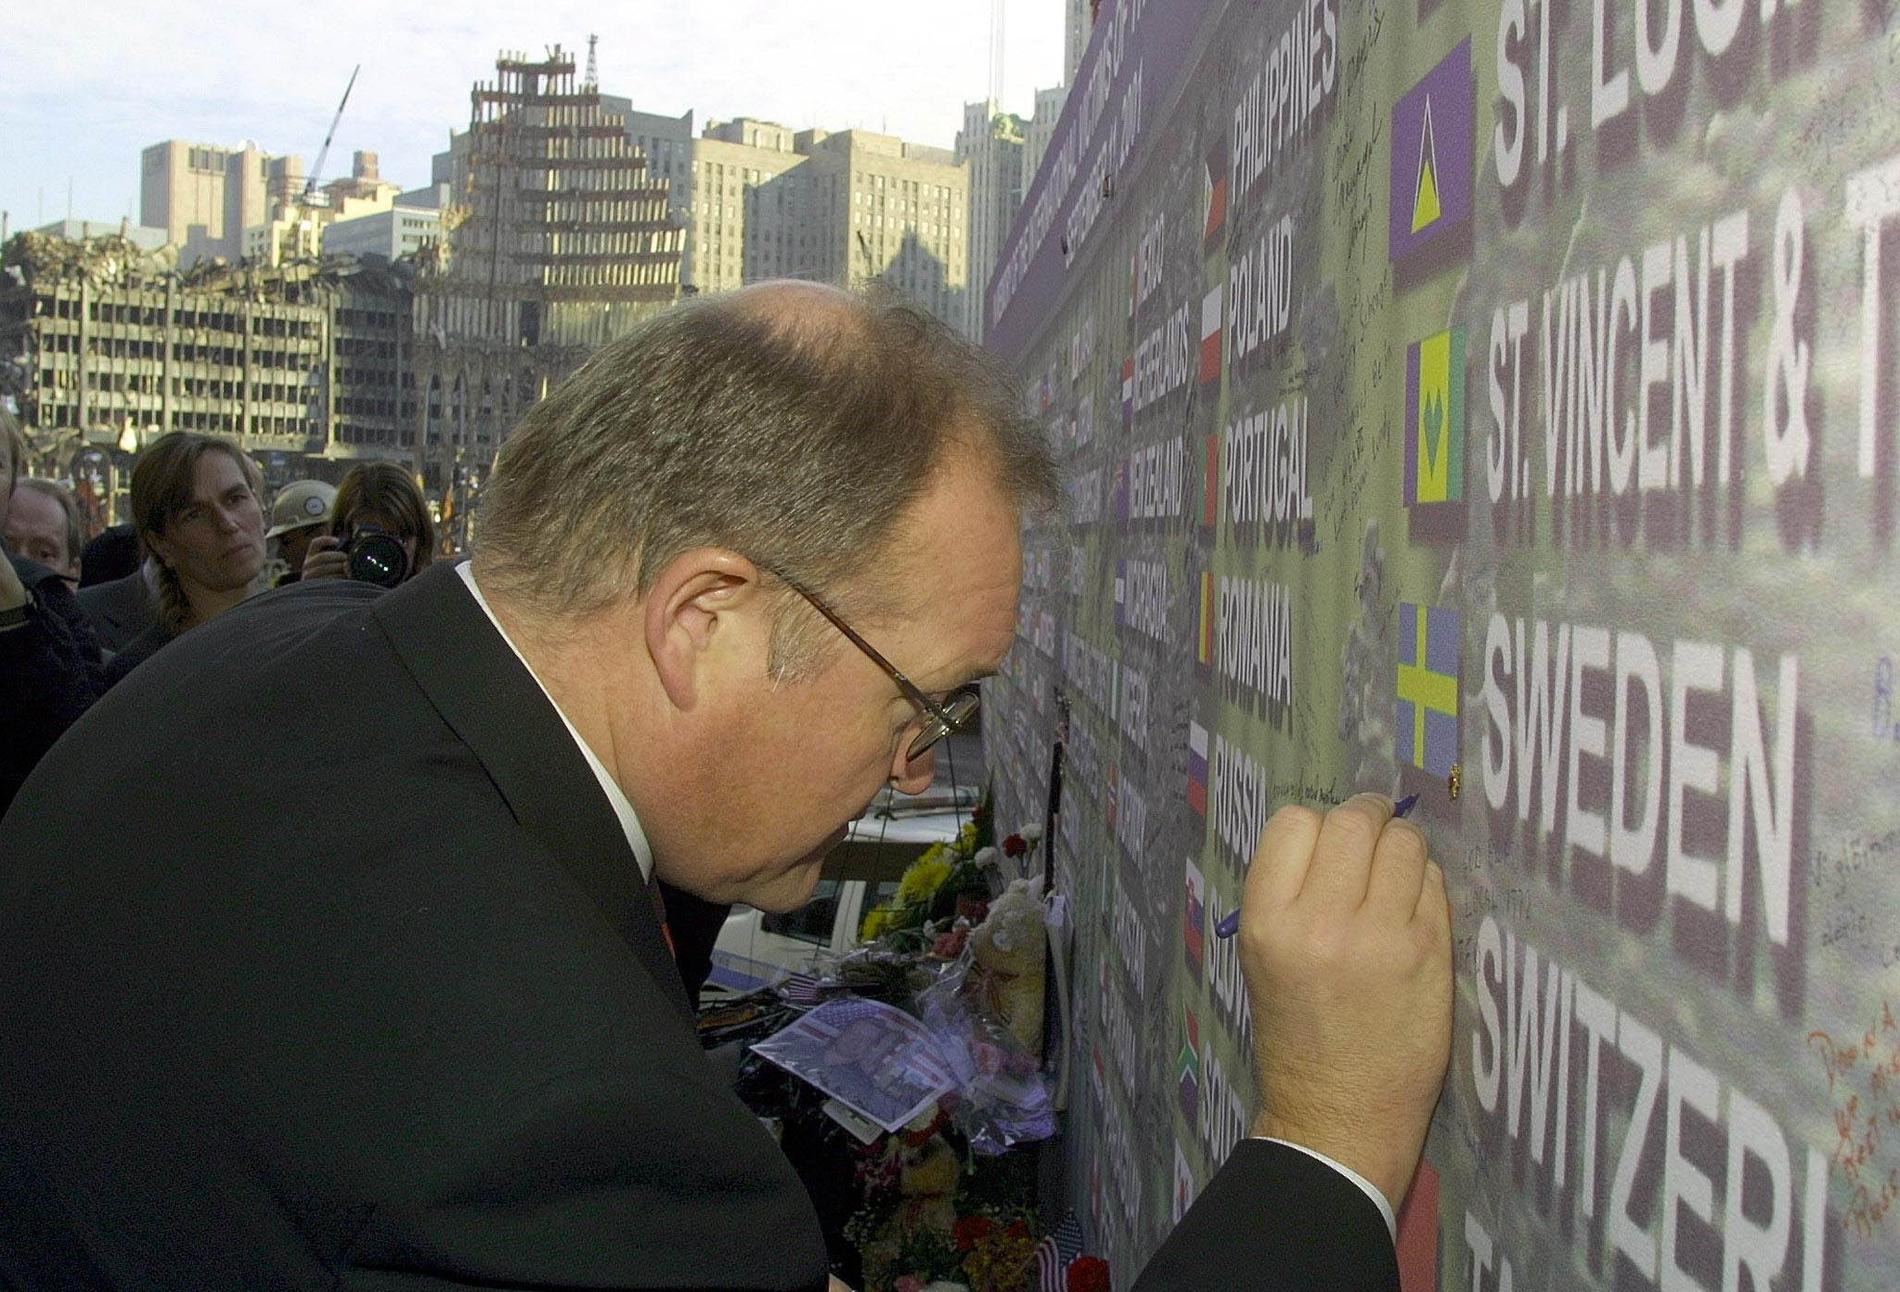 Sveriges dåvarande statsminister Göran Persson besöker New York och skriver på ”Wall of remembrance” i december 2001.